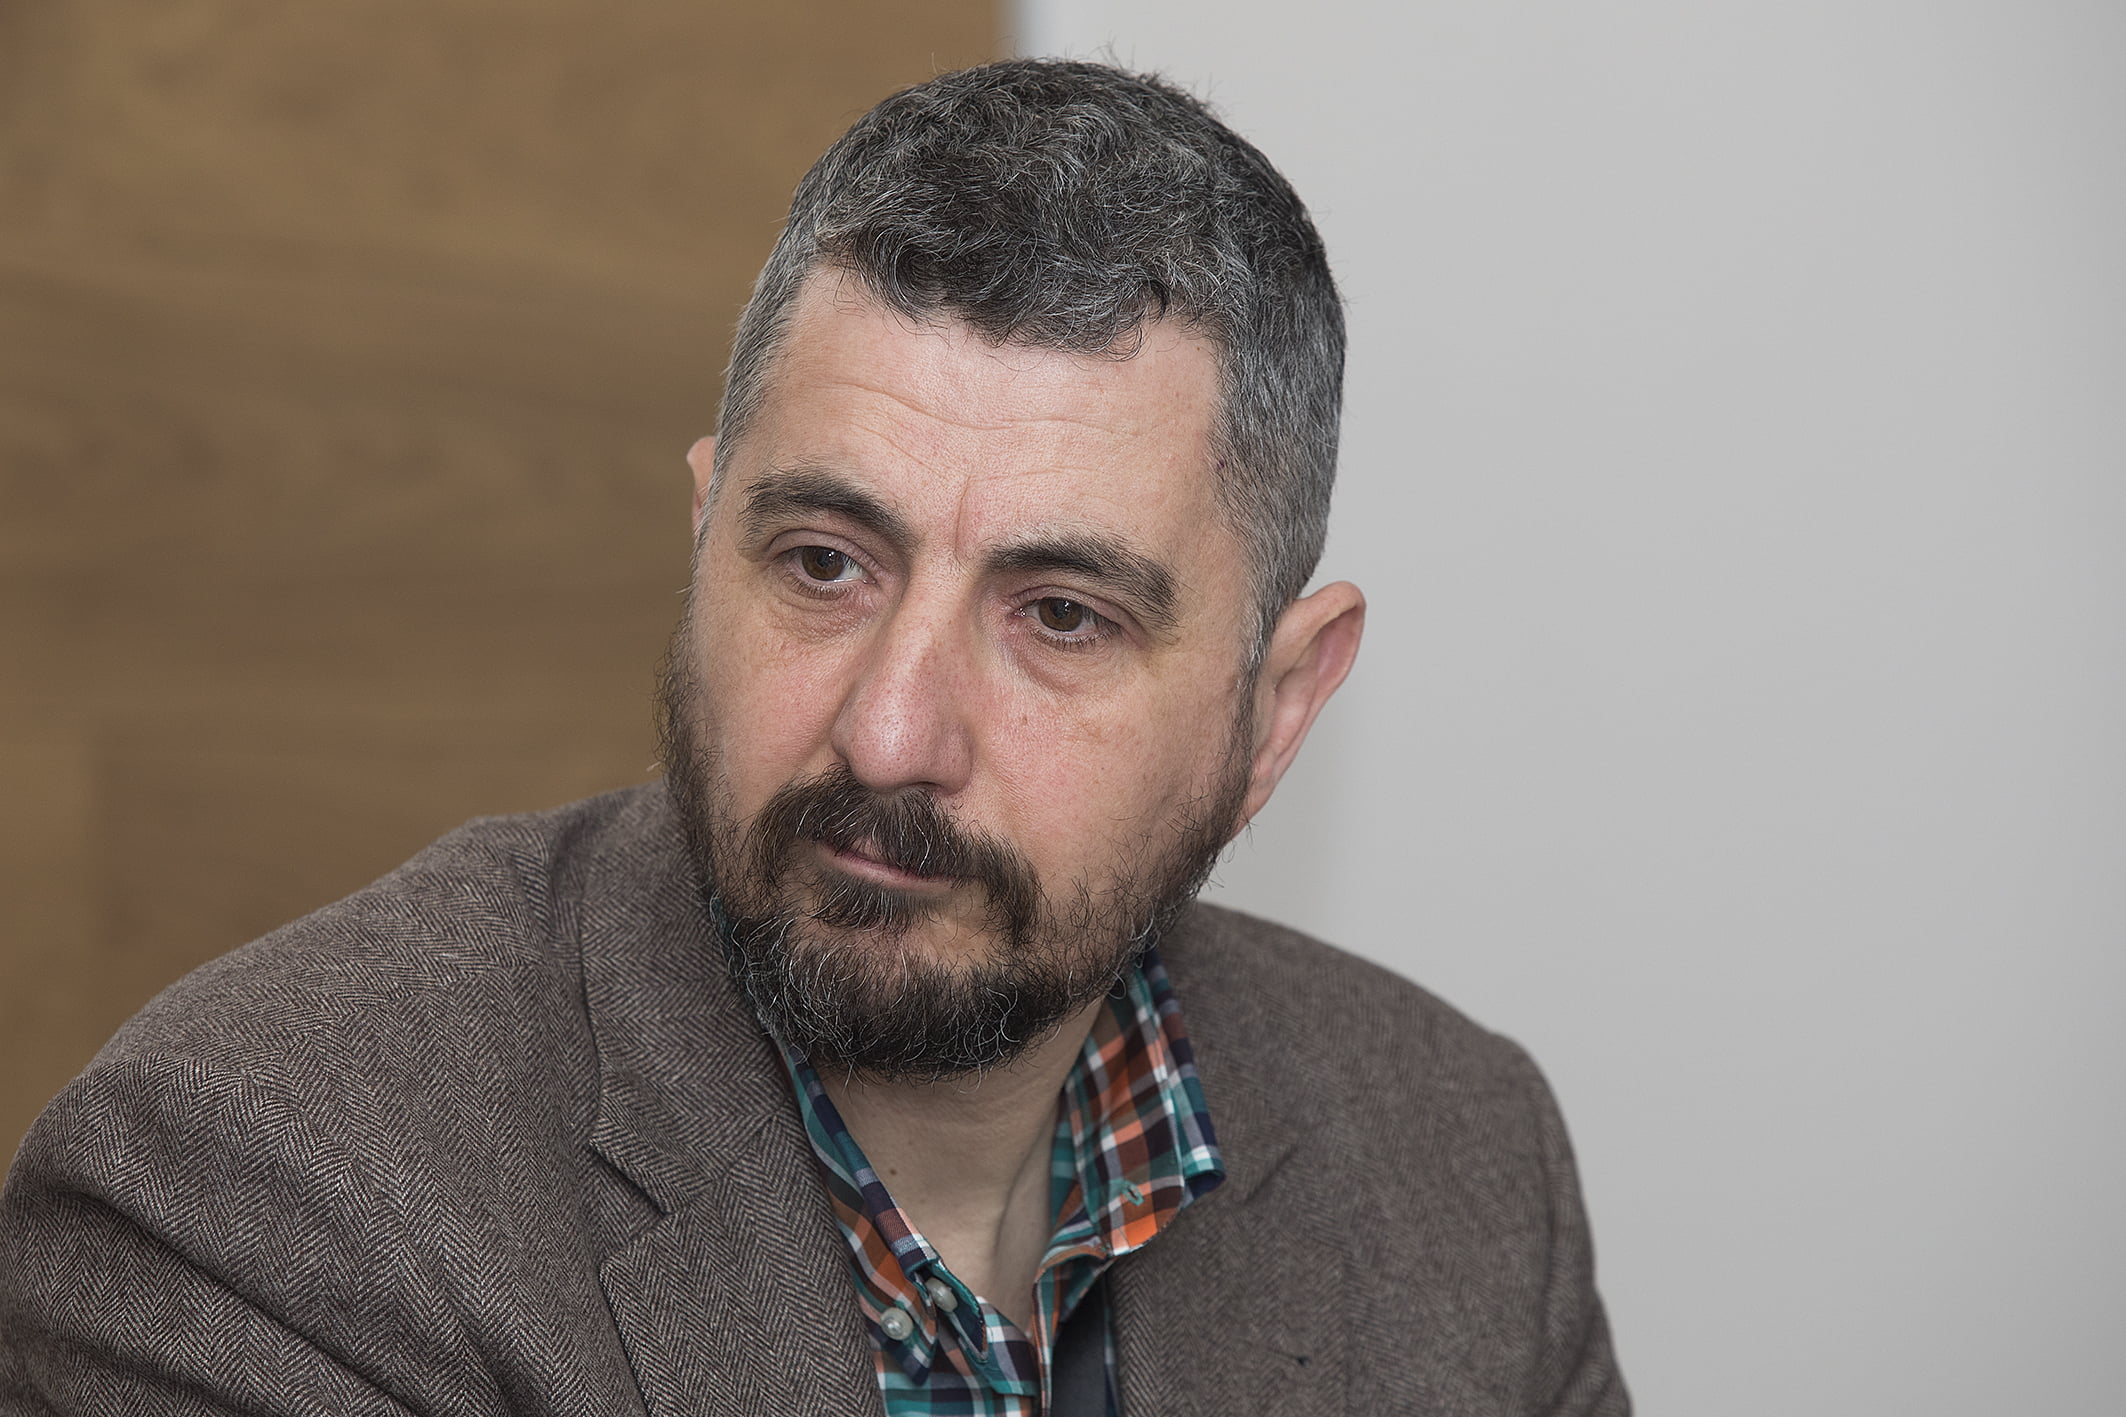 Manuel Asenjo, IT Director of Eversheds Sutherlands